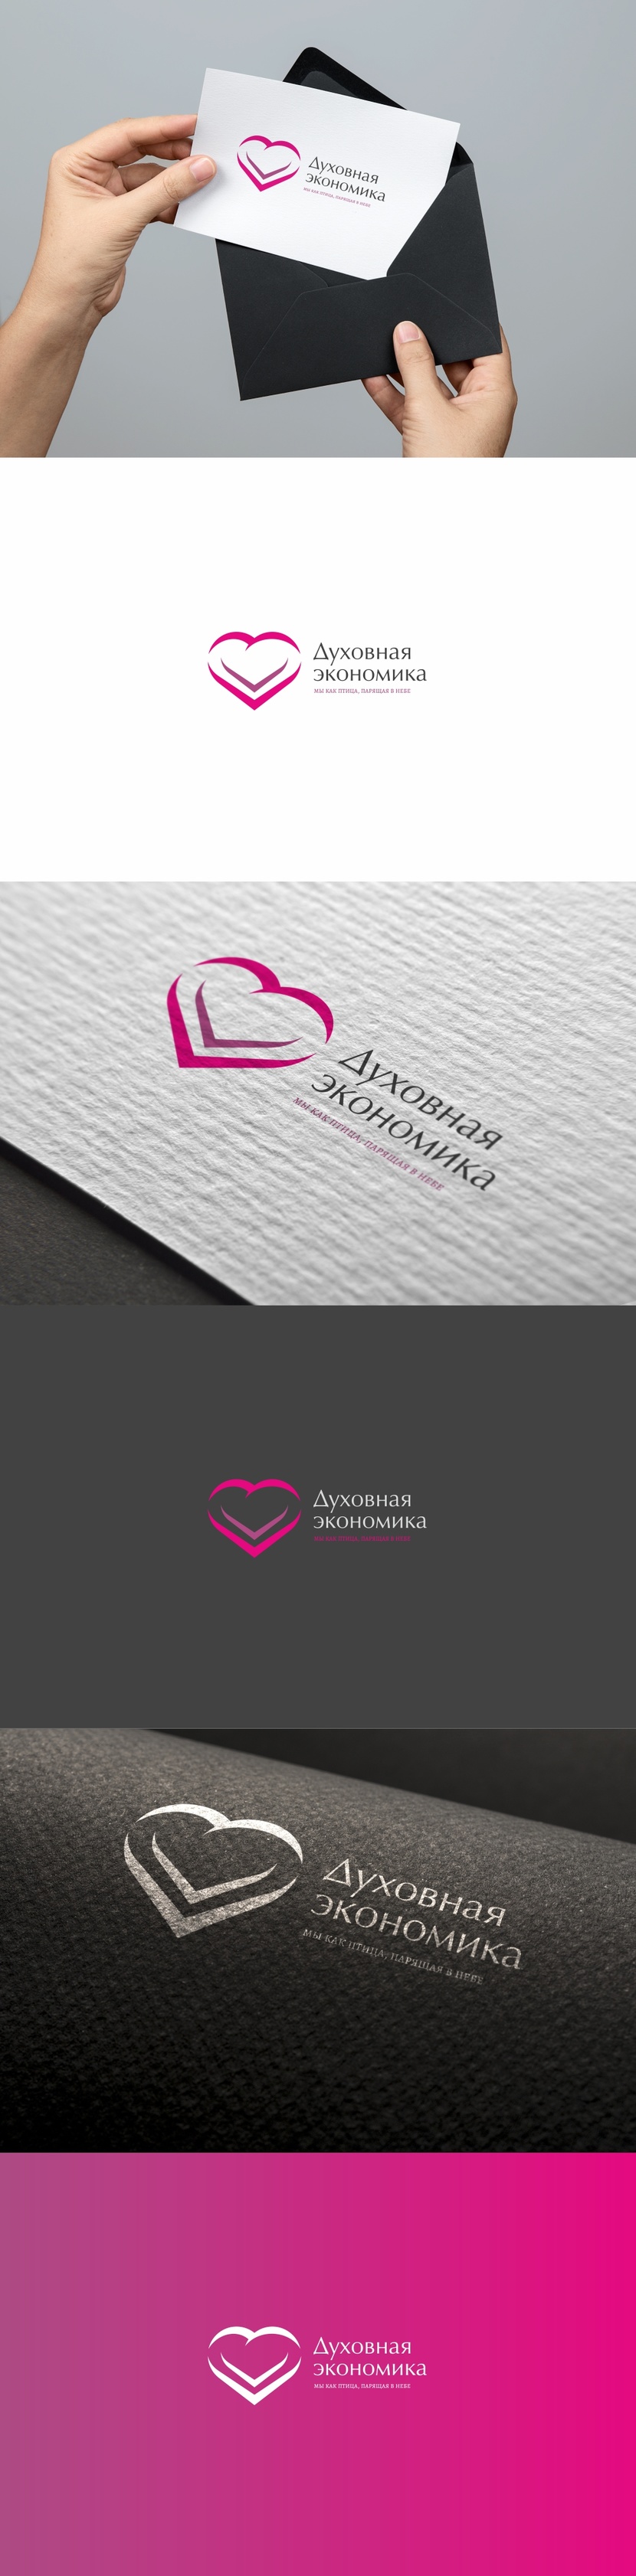 Логотип онлайн-платформы "Духовная экономика"  -  автор Андрей Мартынович